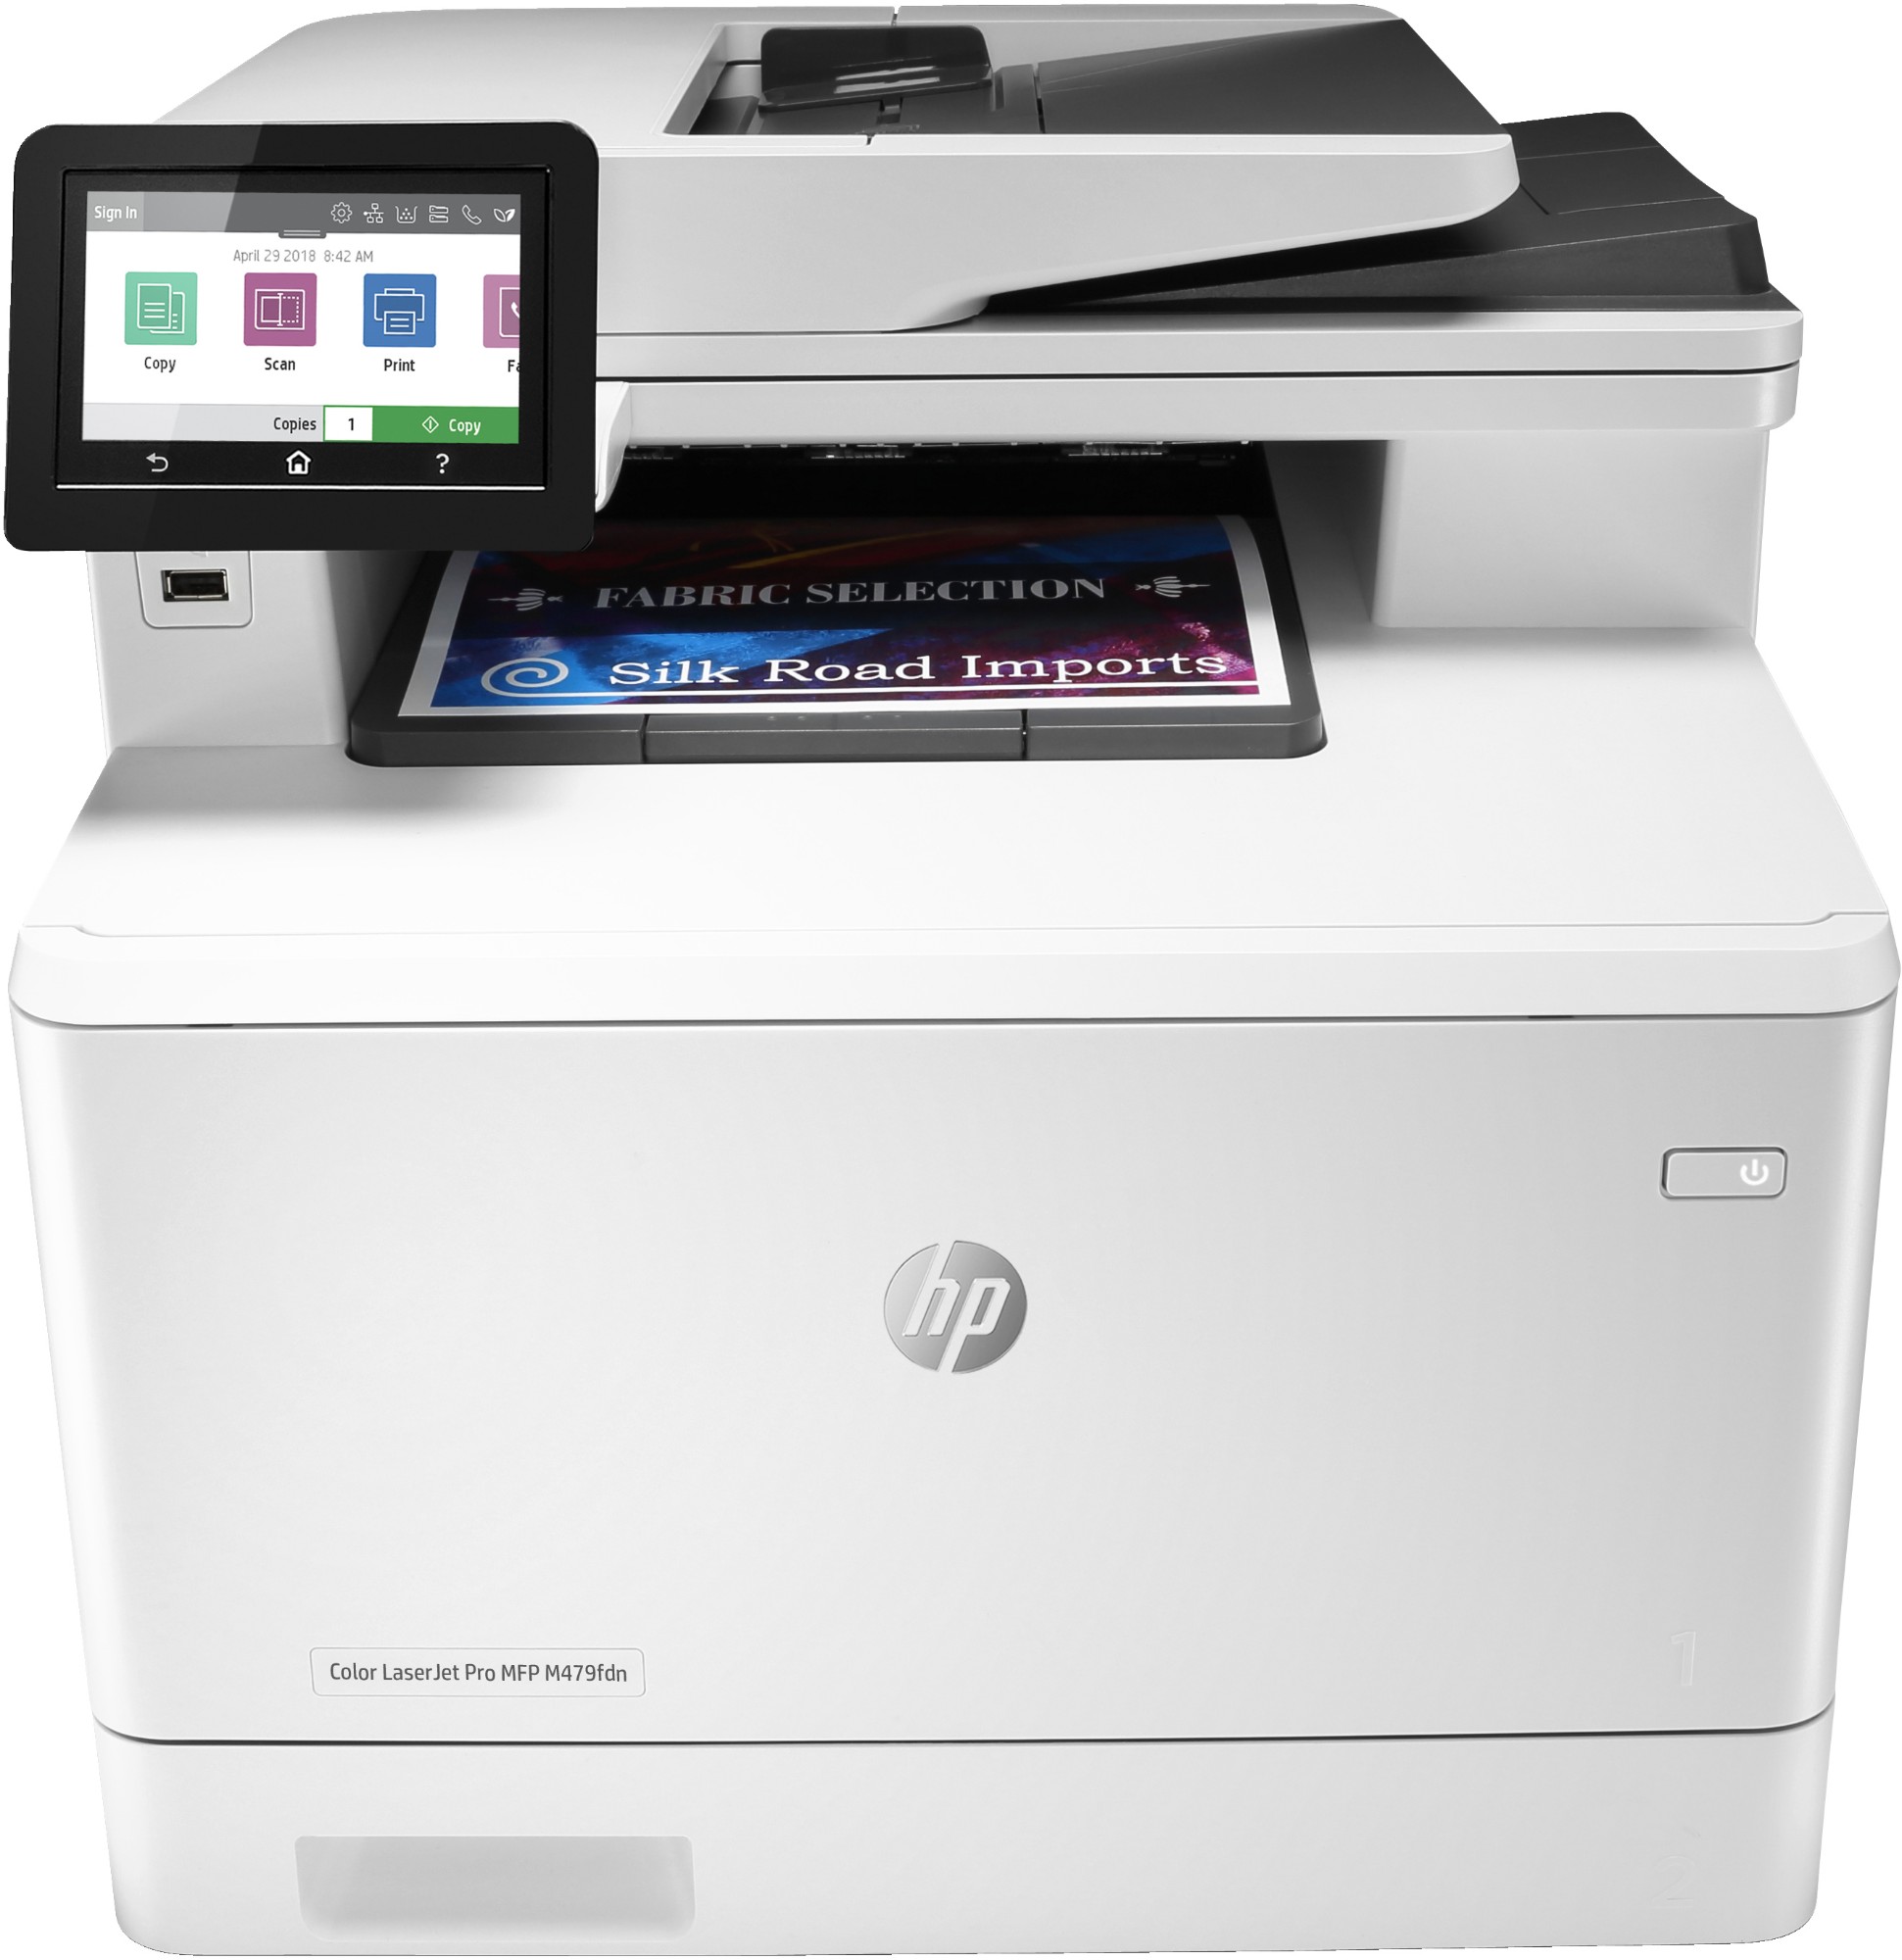 HP Color LaserJet Pro MFP M479fdn, Skriv ut, kopiera, skanna, fax, e-post, Skanna till e-post/PDF; Dubbelsidig utskrift; 50 arks ADF (ej ihoprullat)